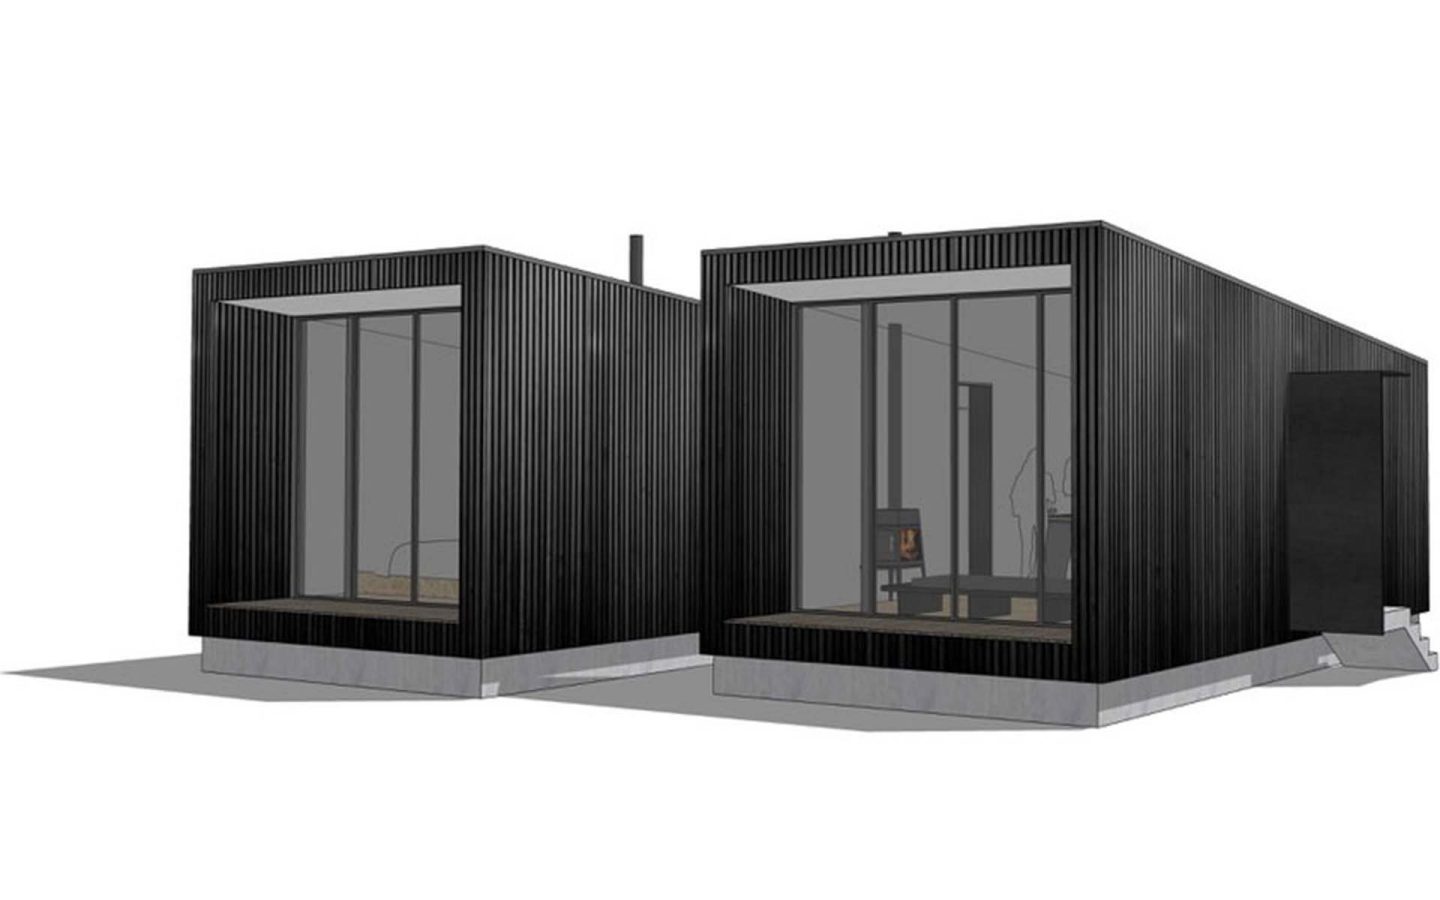 Die Black Cabins sind komplett aus Holz gebaut und bilden eine harmonische Einheit aus verbundenen Einzelräumen.